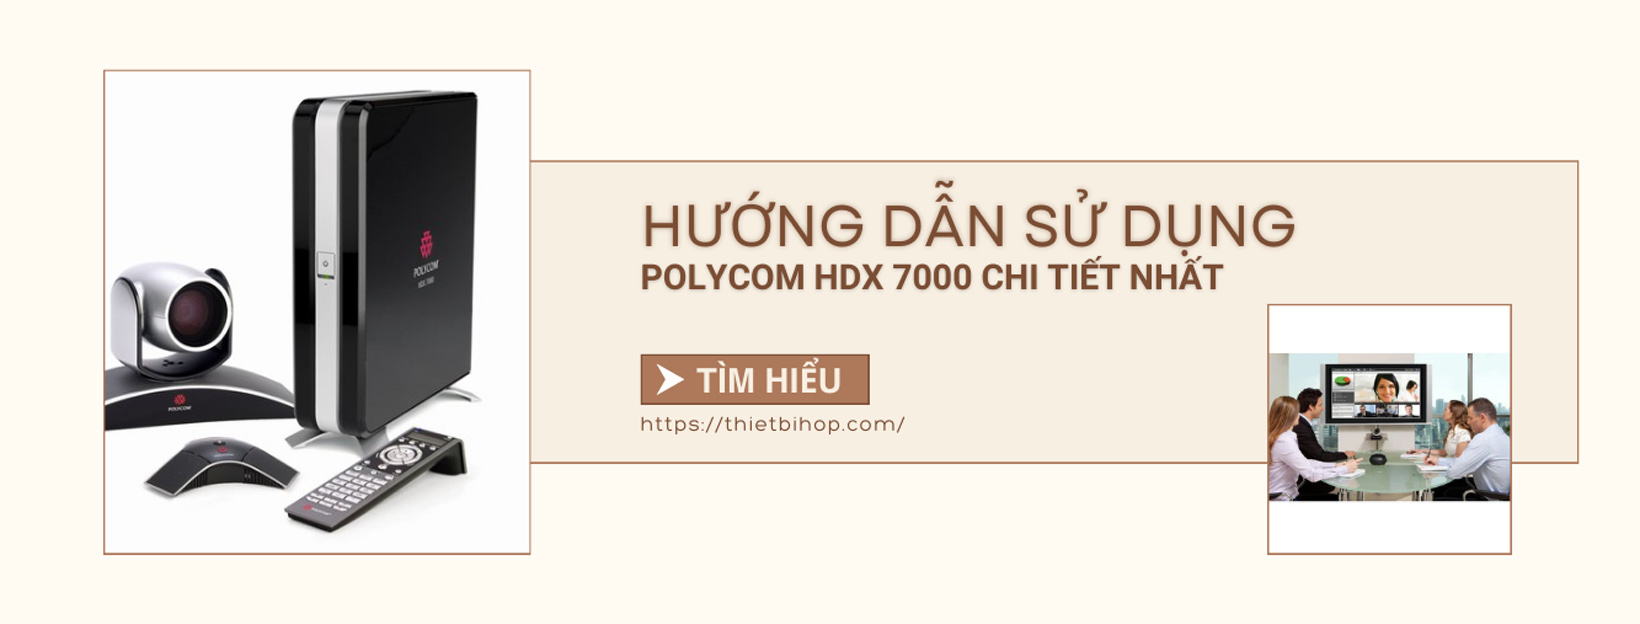 hướng dẫn sử dụng polycom hdx 7000 chi tiết nhất